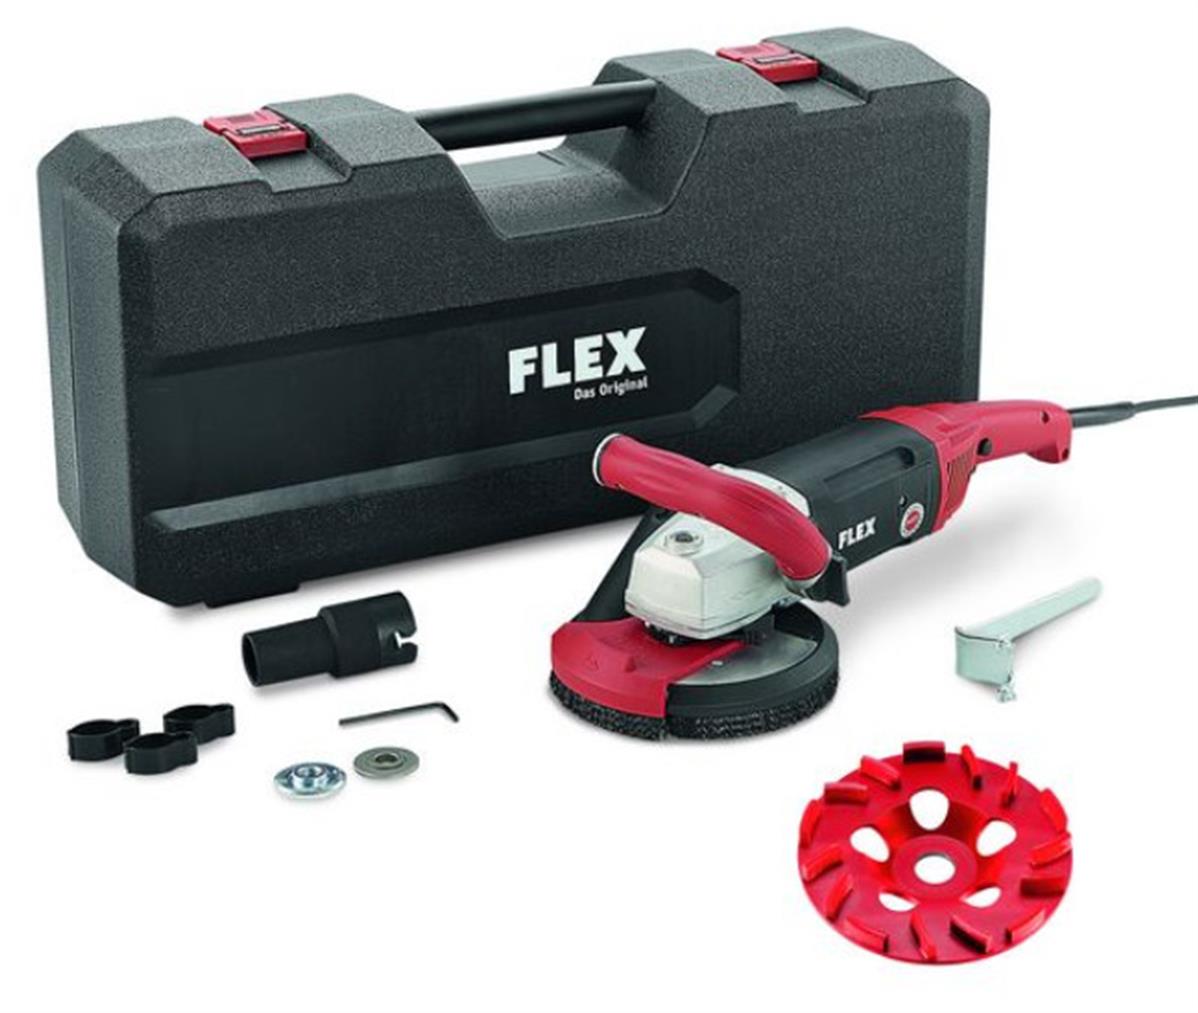 FLEX Ponceuse béton 1800 W 150 mm LD 18-7 150 R, Kit - Outil Maxi Pro